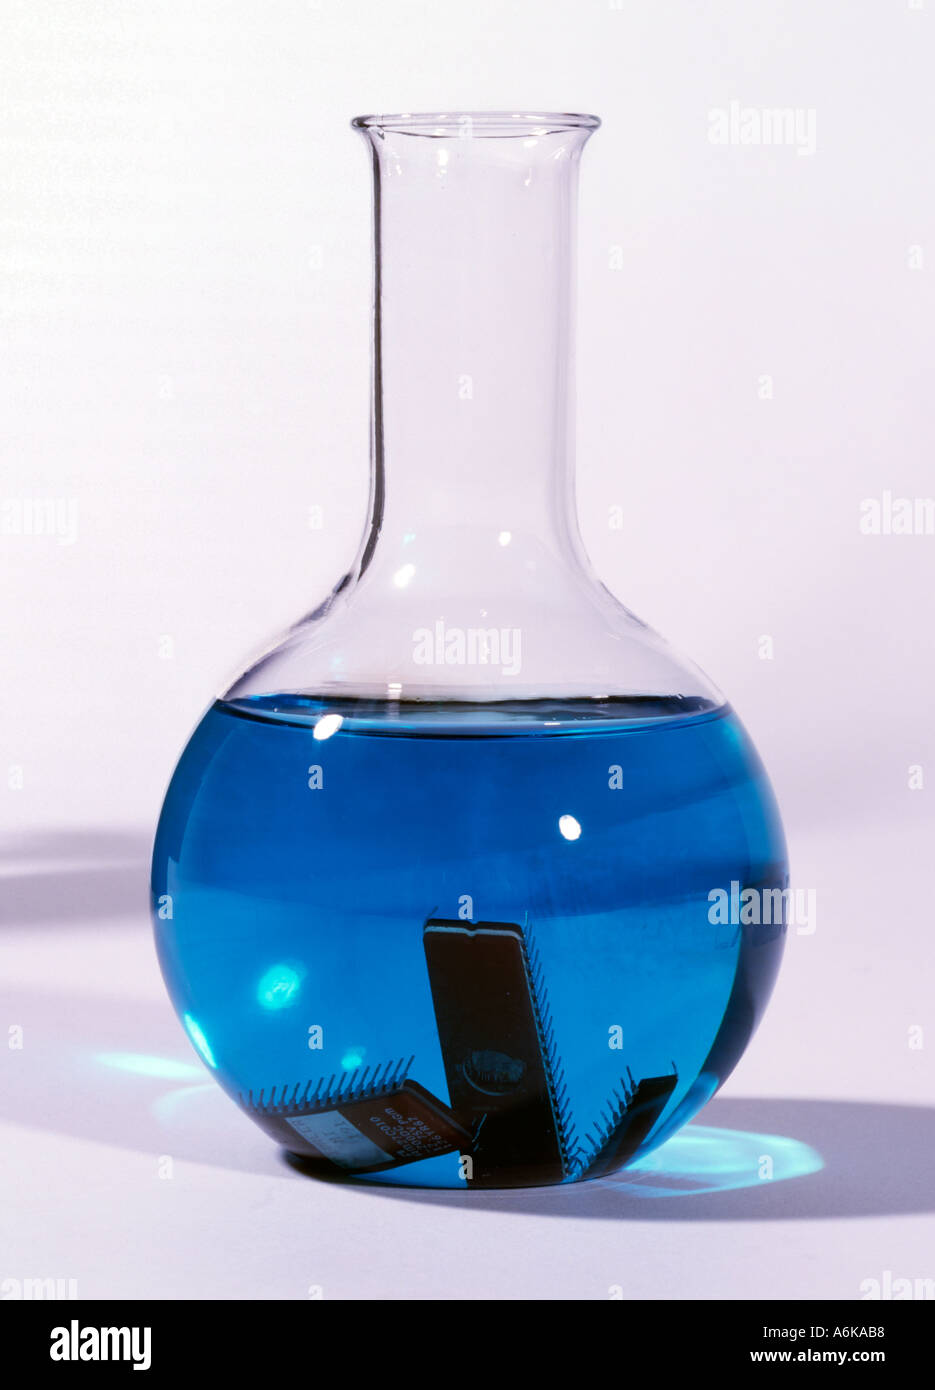 Laboratoire de chimie de l'erlenmeyer avec liquide bleu Banque D'Images